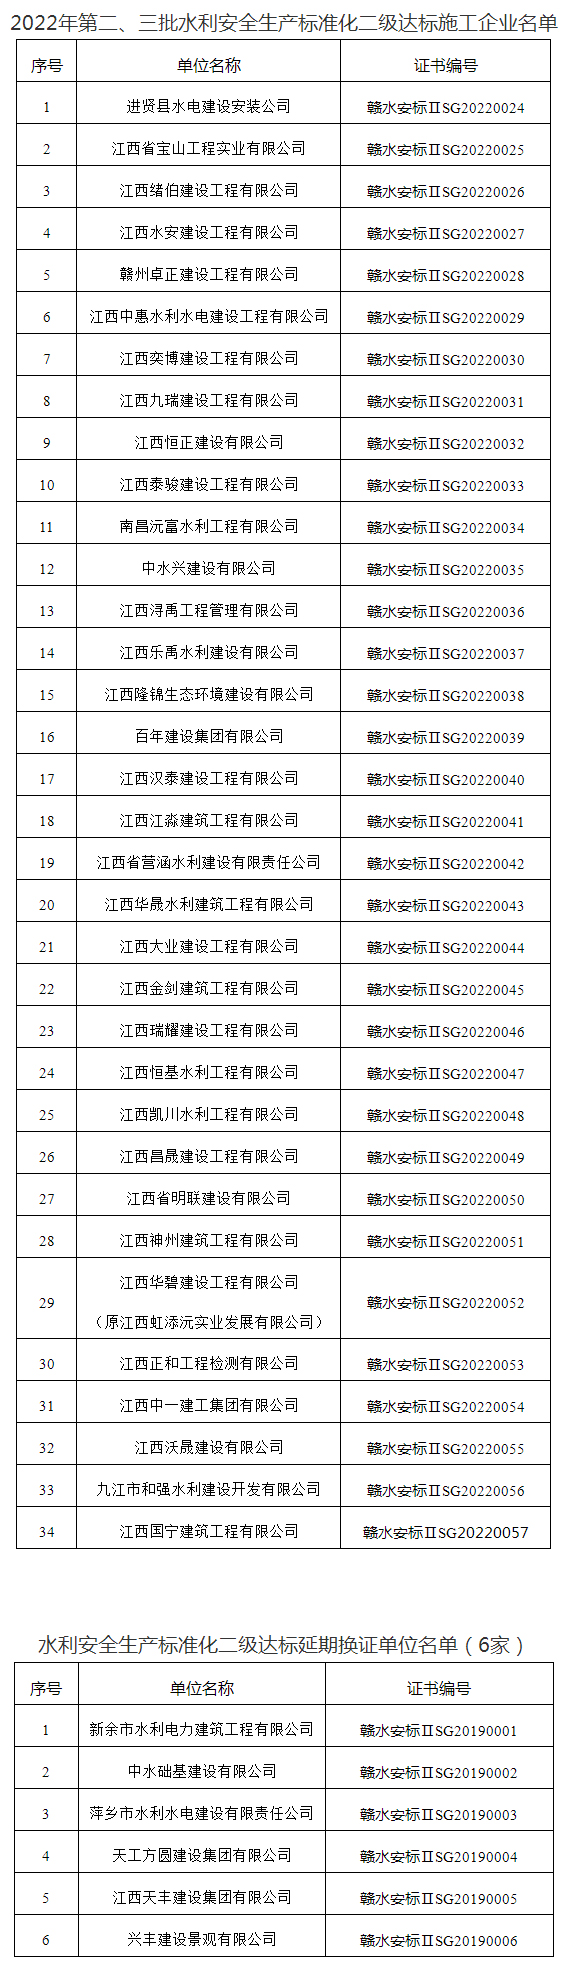 江西省水利厅-通知公告-江西省水利厅关于公布2022年第二、三批水利安全生产标准化二级达标单位以及延期换证单位名单的通知.jpg